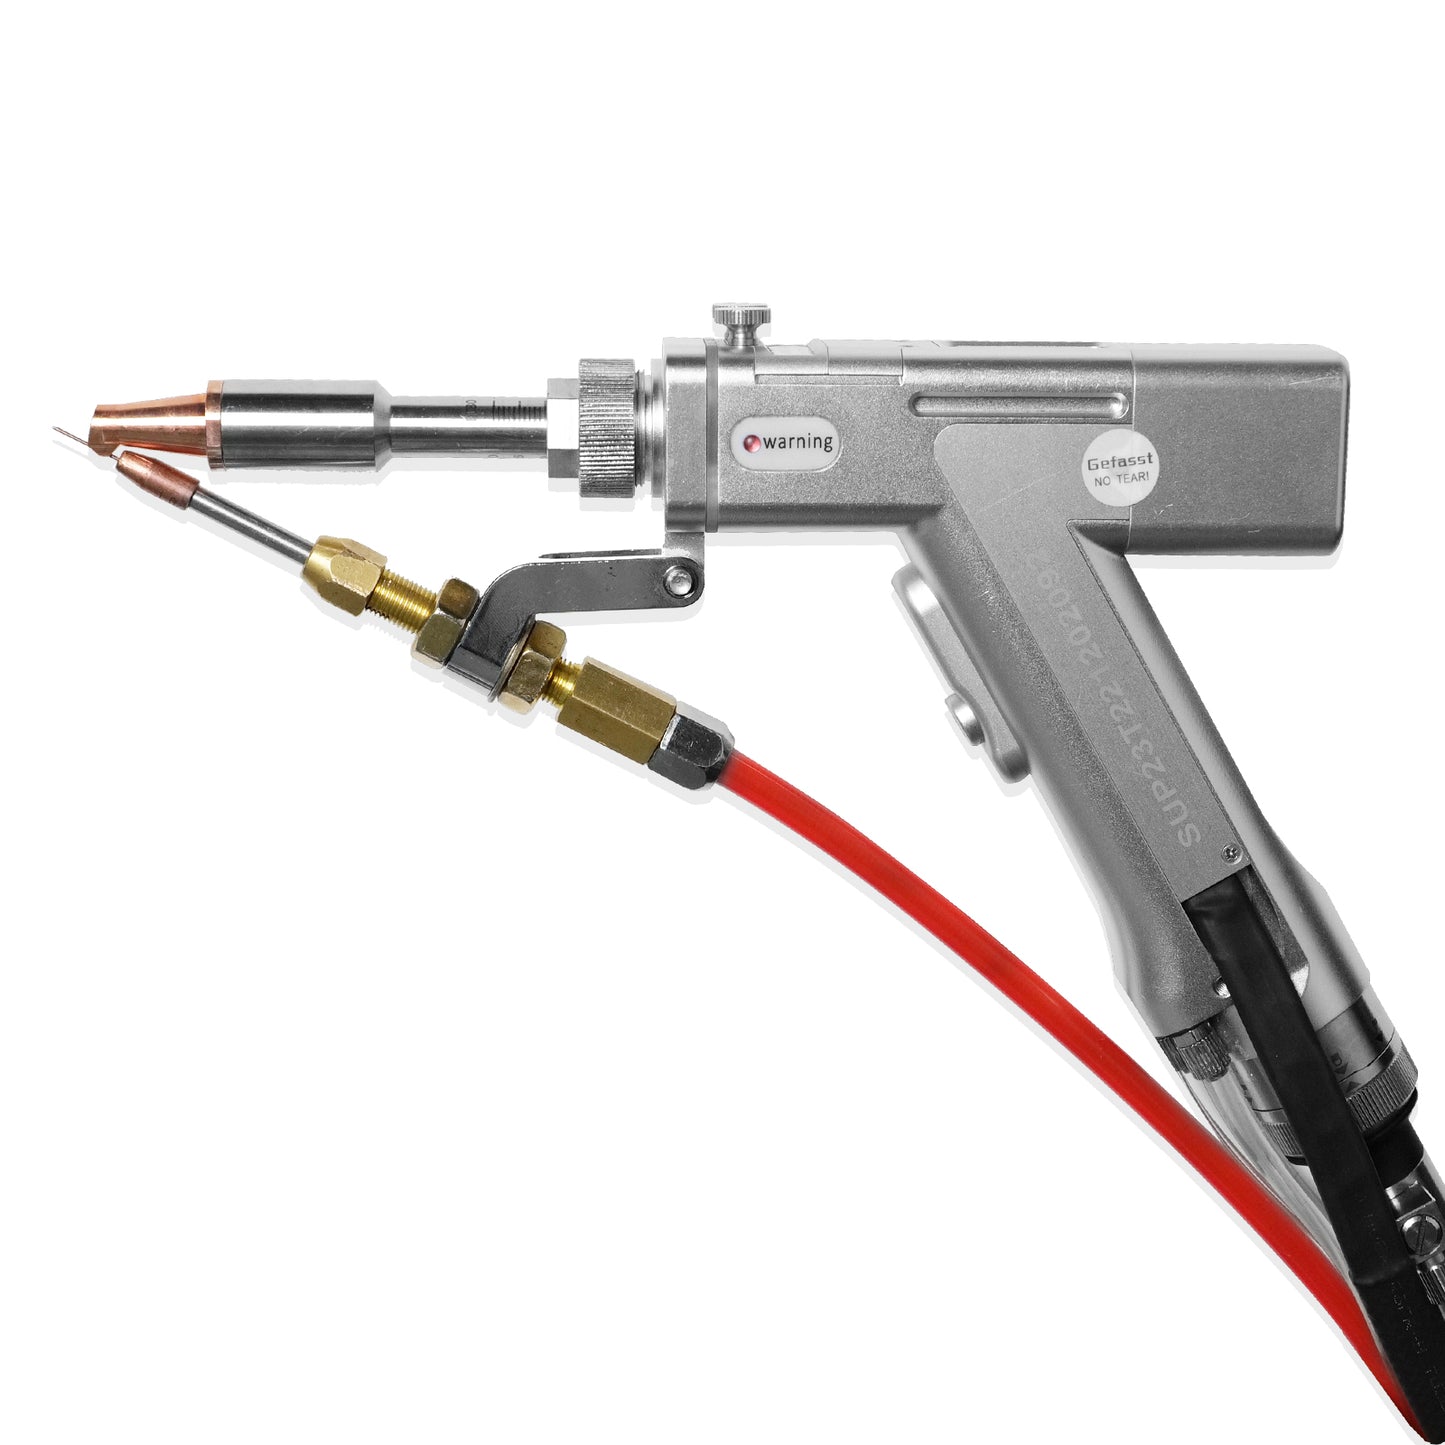 SFX Handheld Fiber Laser Welding Cleaning 2 in 1 Machine 1000W/1500W/2000W/3000W Laser Welder